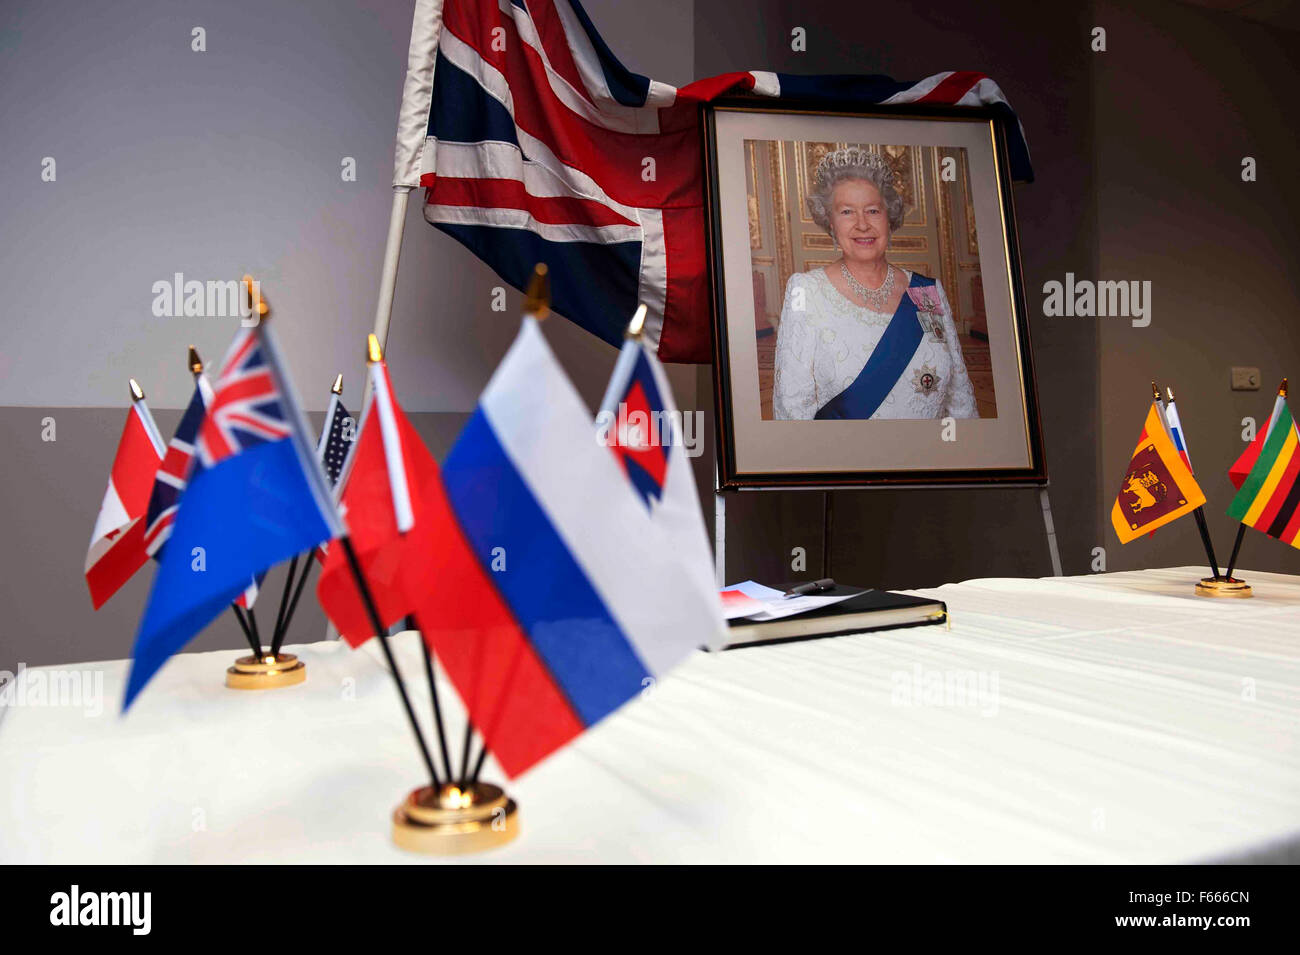 Ein Porträt der Königin von England auf einem Tisch während einer Einbürgerungszeremonie mit den Union Jack und Common Wealth Flaggen geschmückt. Stockfoto